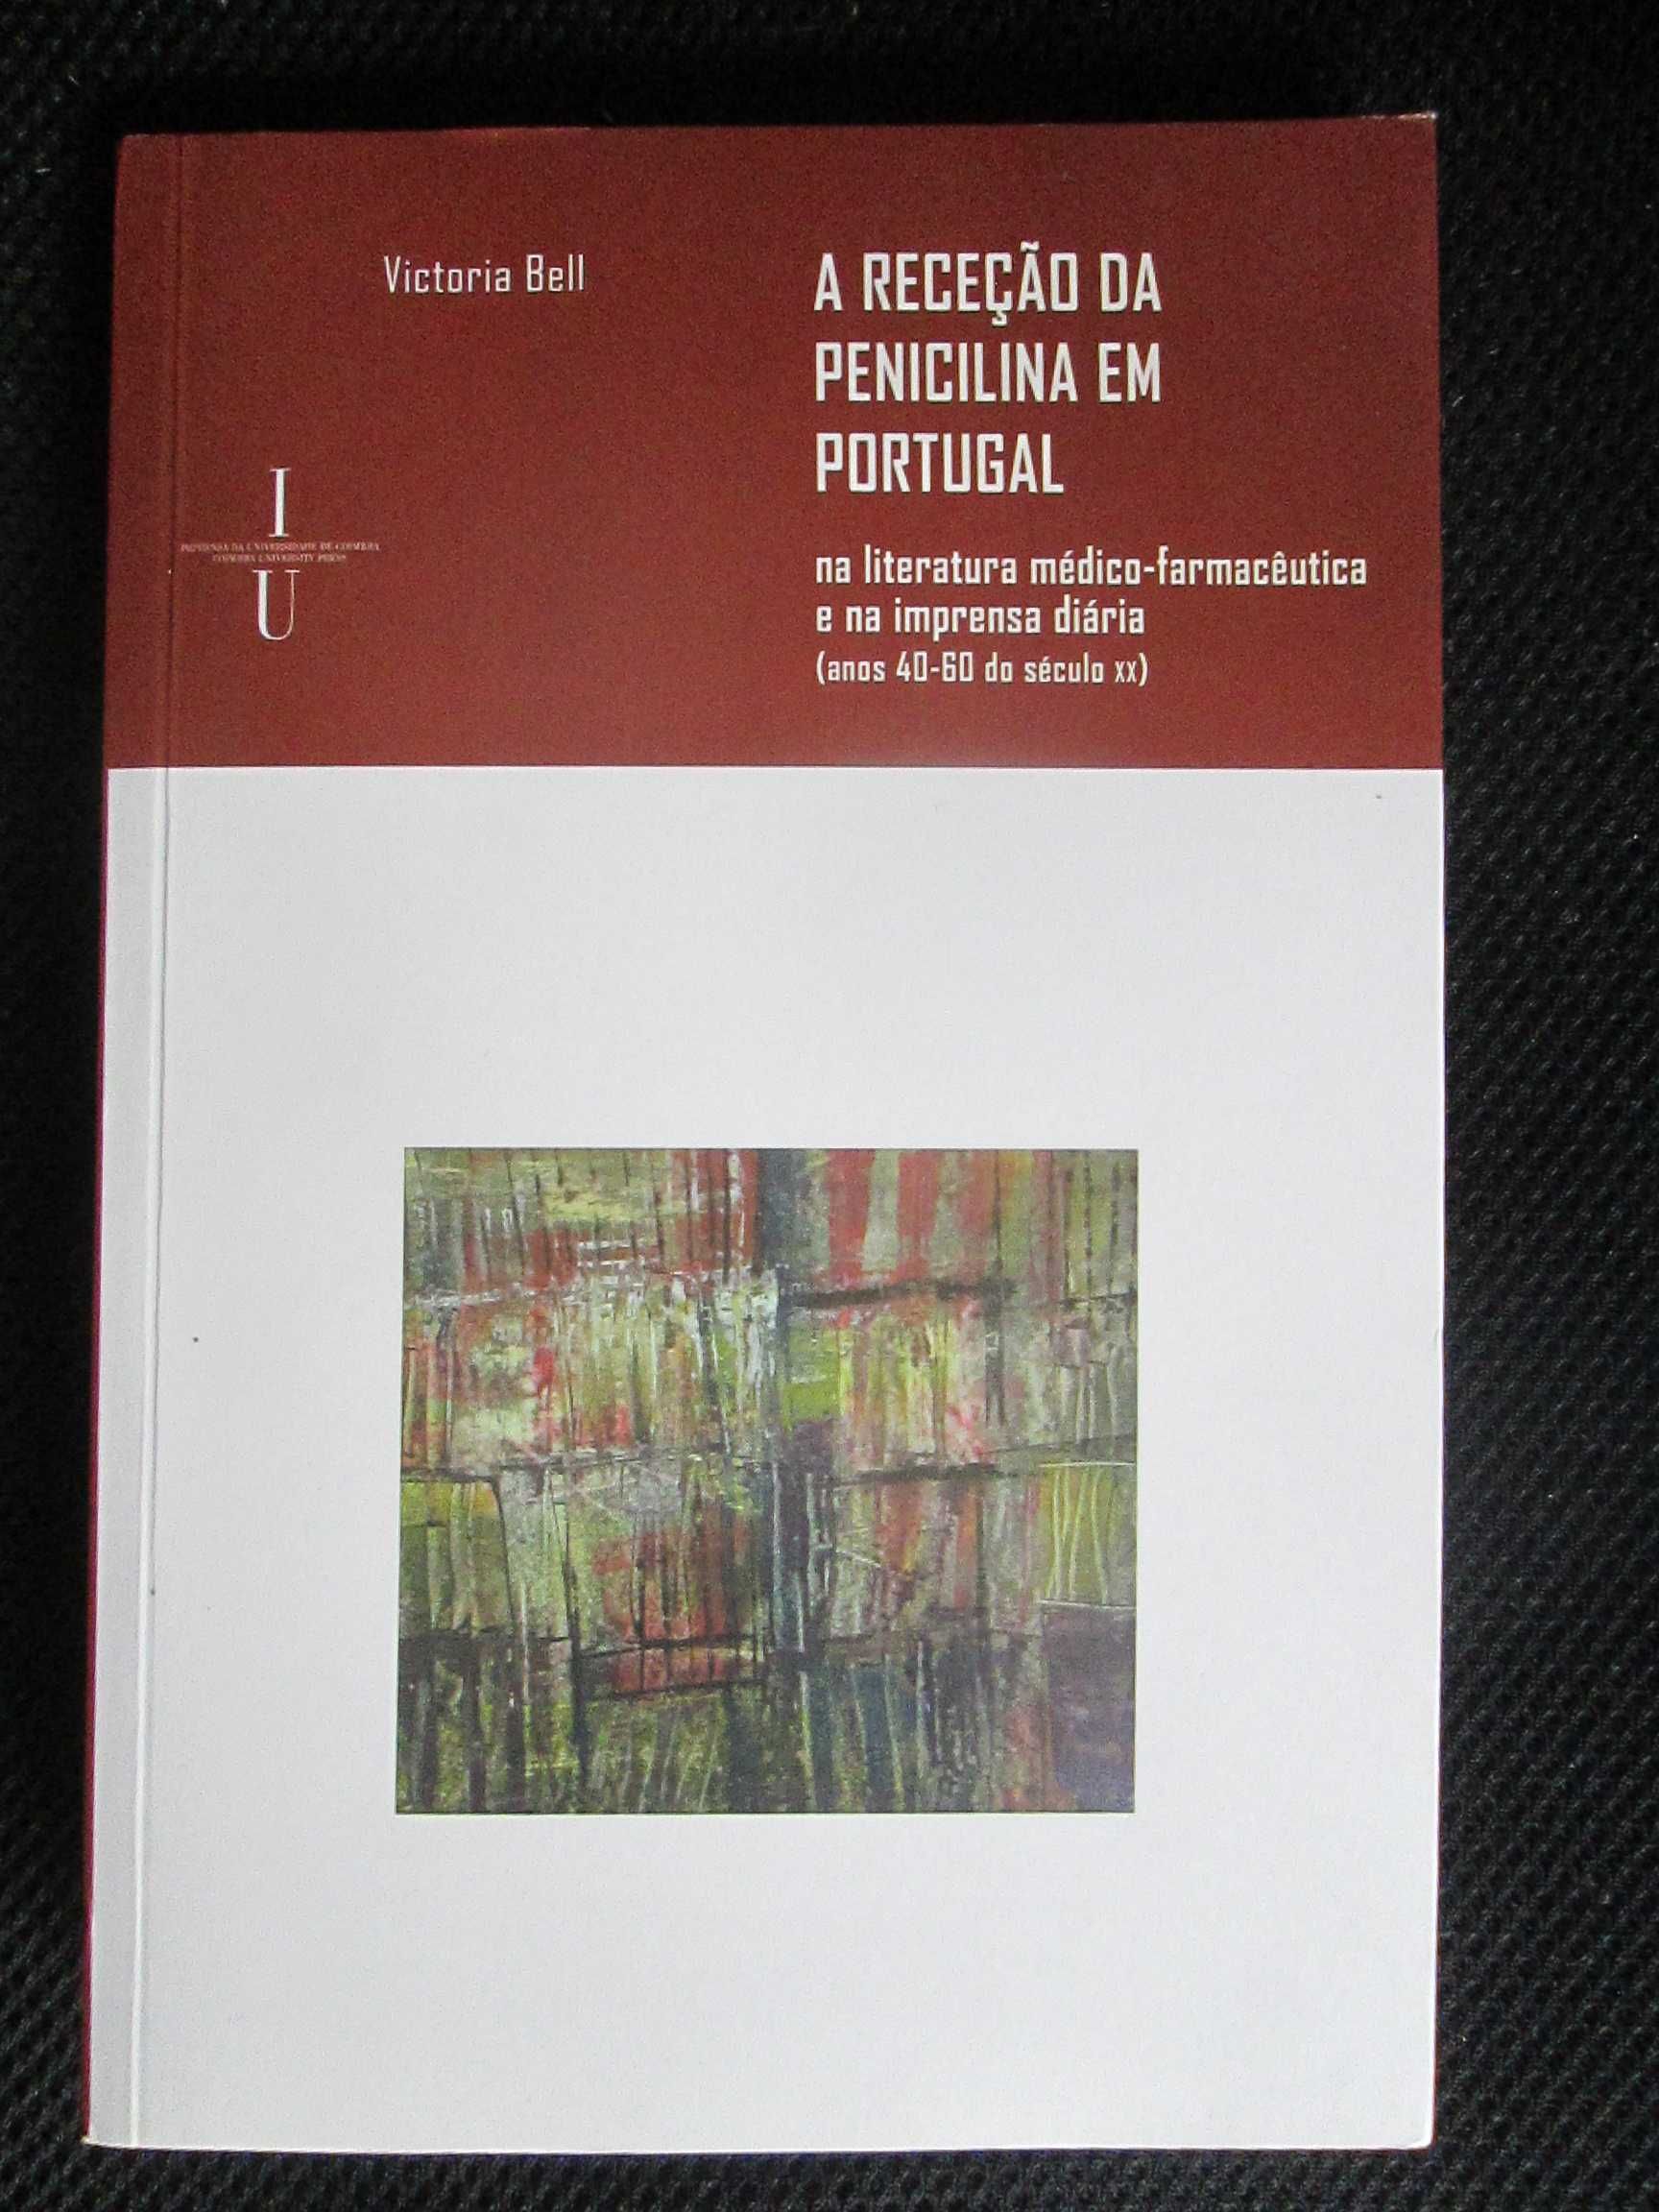 A Recepção da Penicilina em Portugal, de Victoria Bell